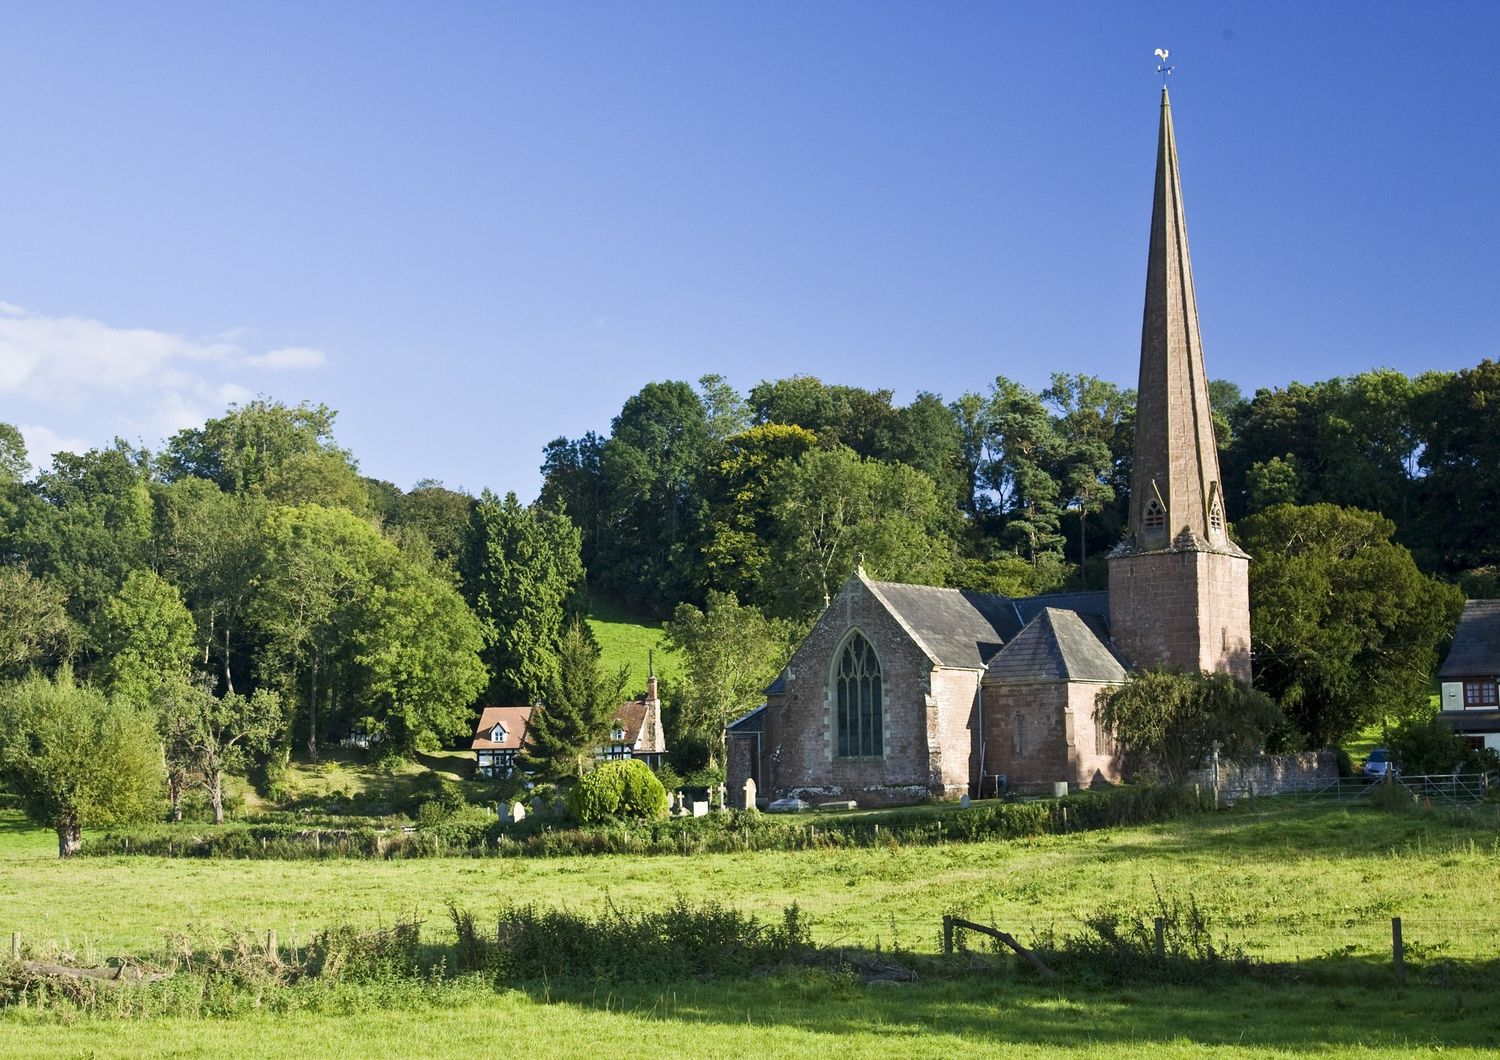 Sulle guglie delle chiese britanniche svetteranno i ripetitori del&nbsp;Wi-Fi